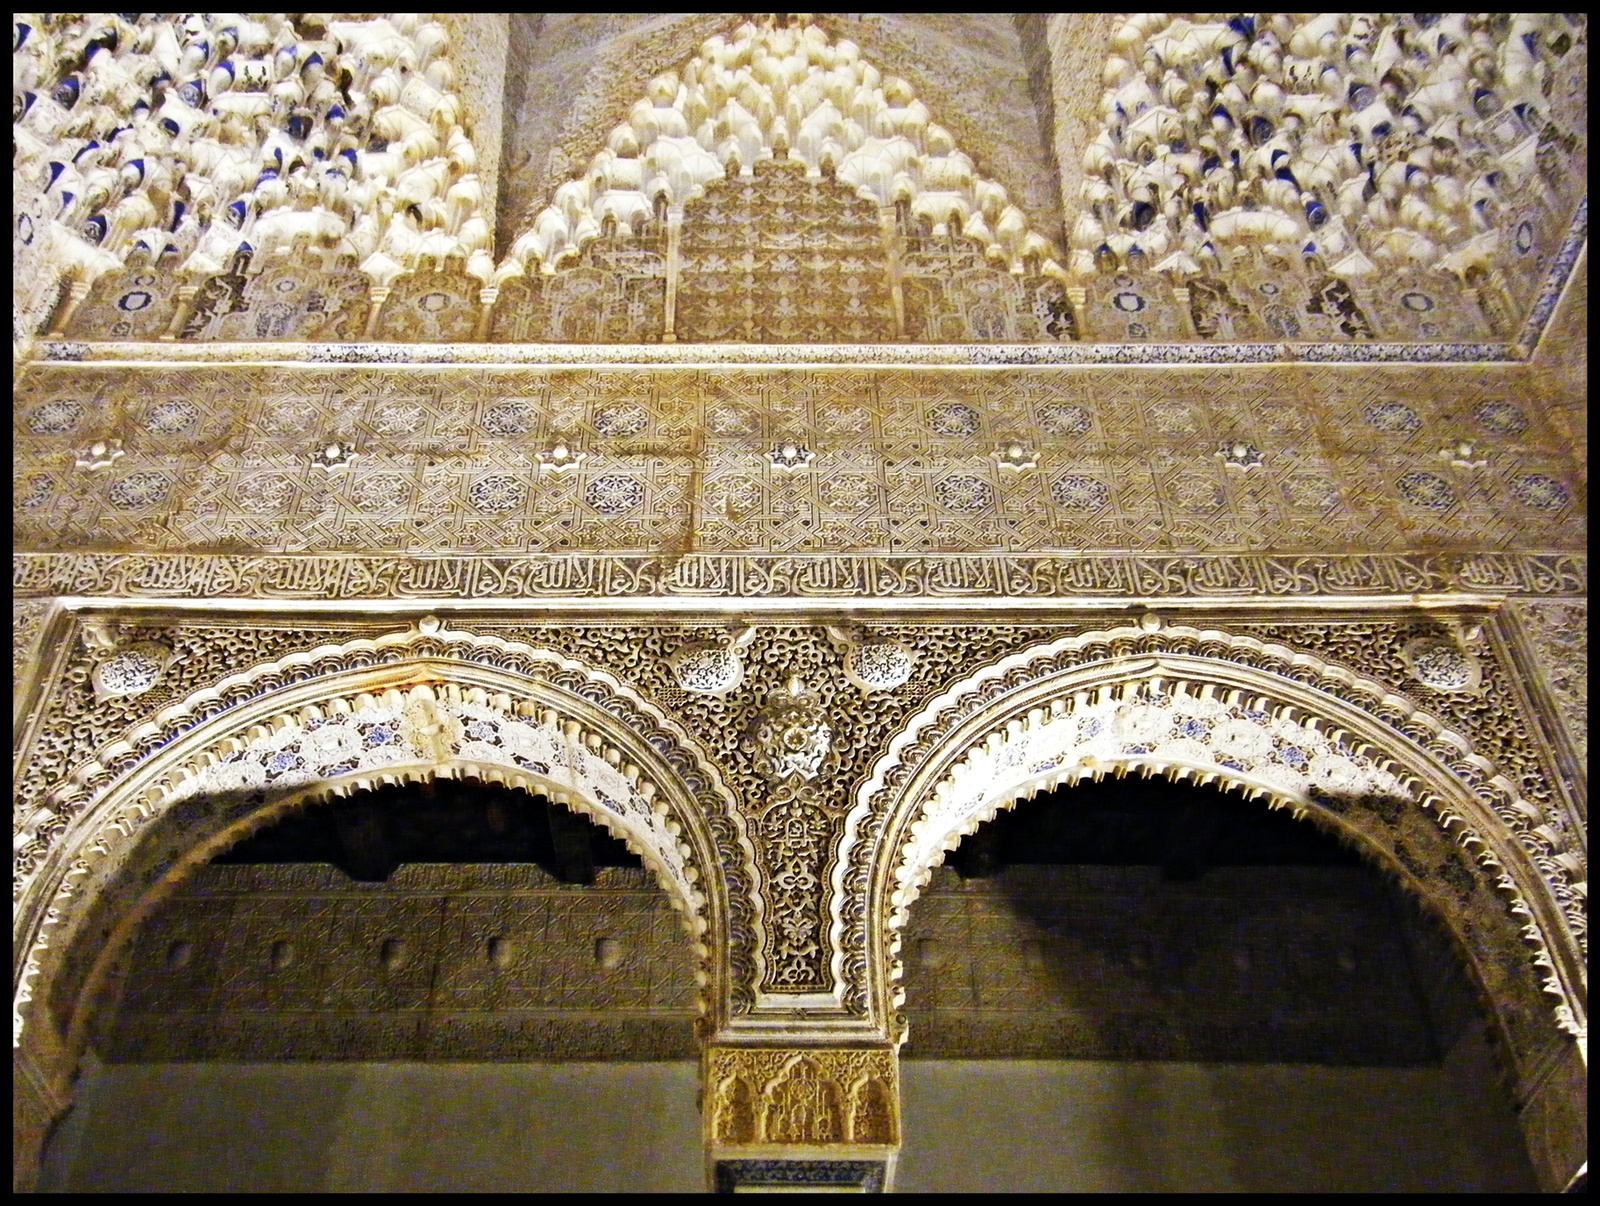 Alhambra 37